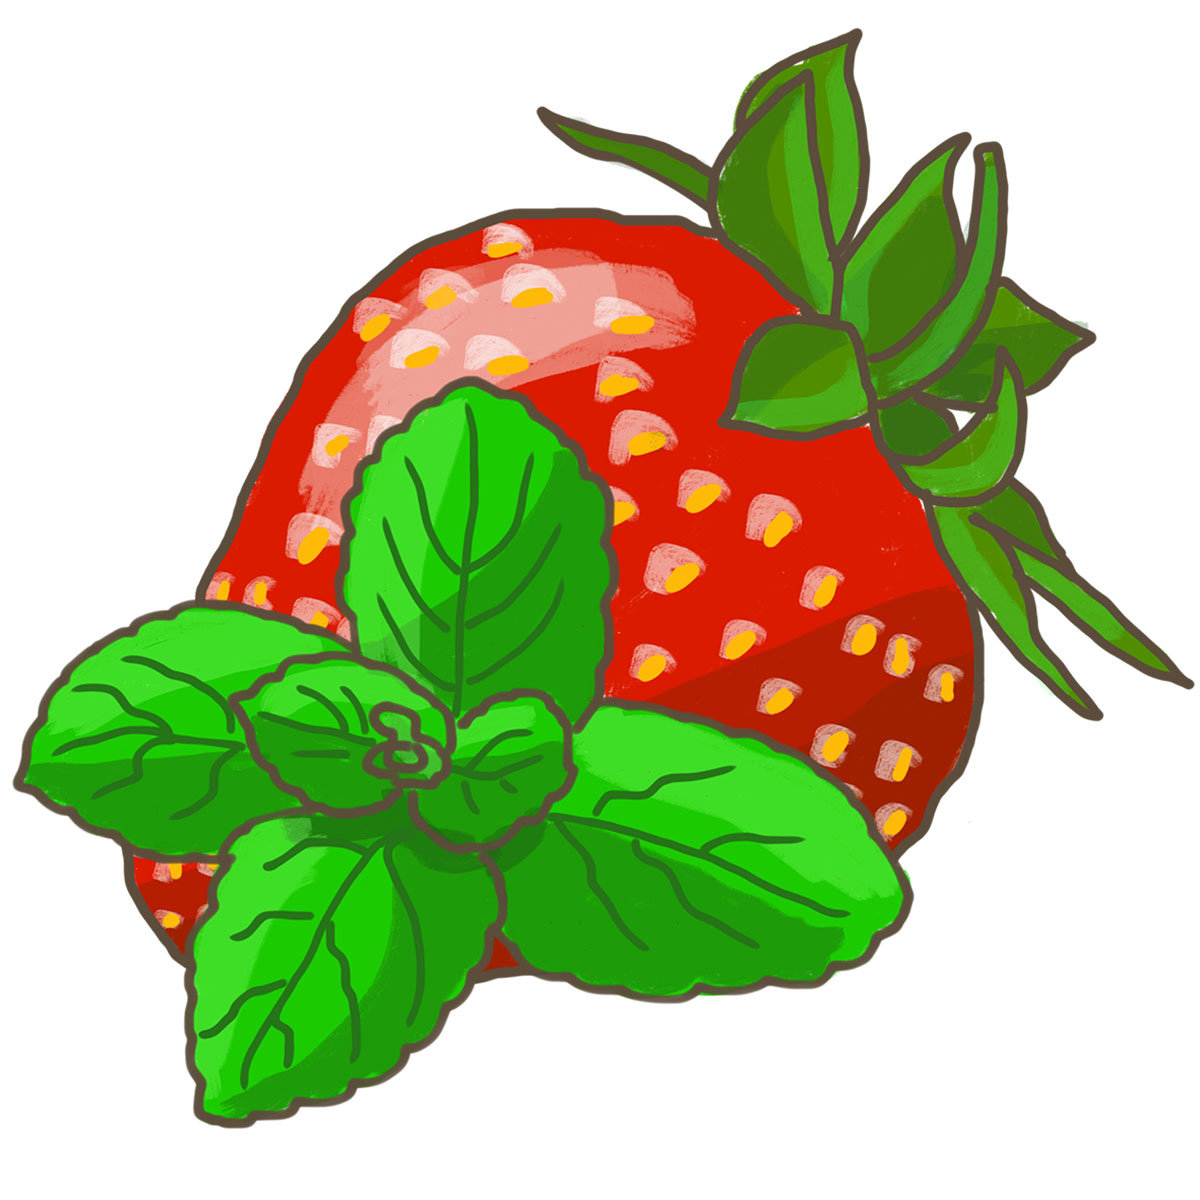 BIO Kräuterpflanze Erdbeer-Minze, im ca. 12 cm-Topf online kaufen bei ...